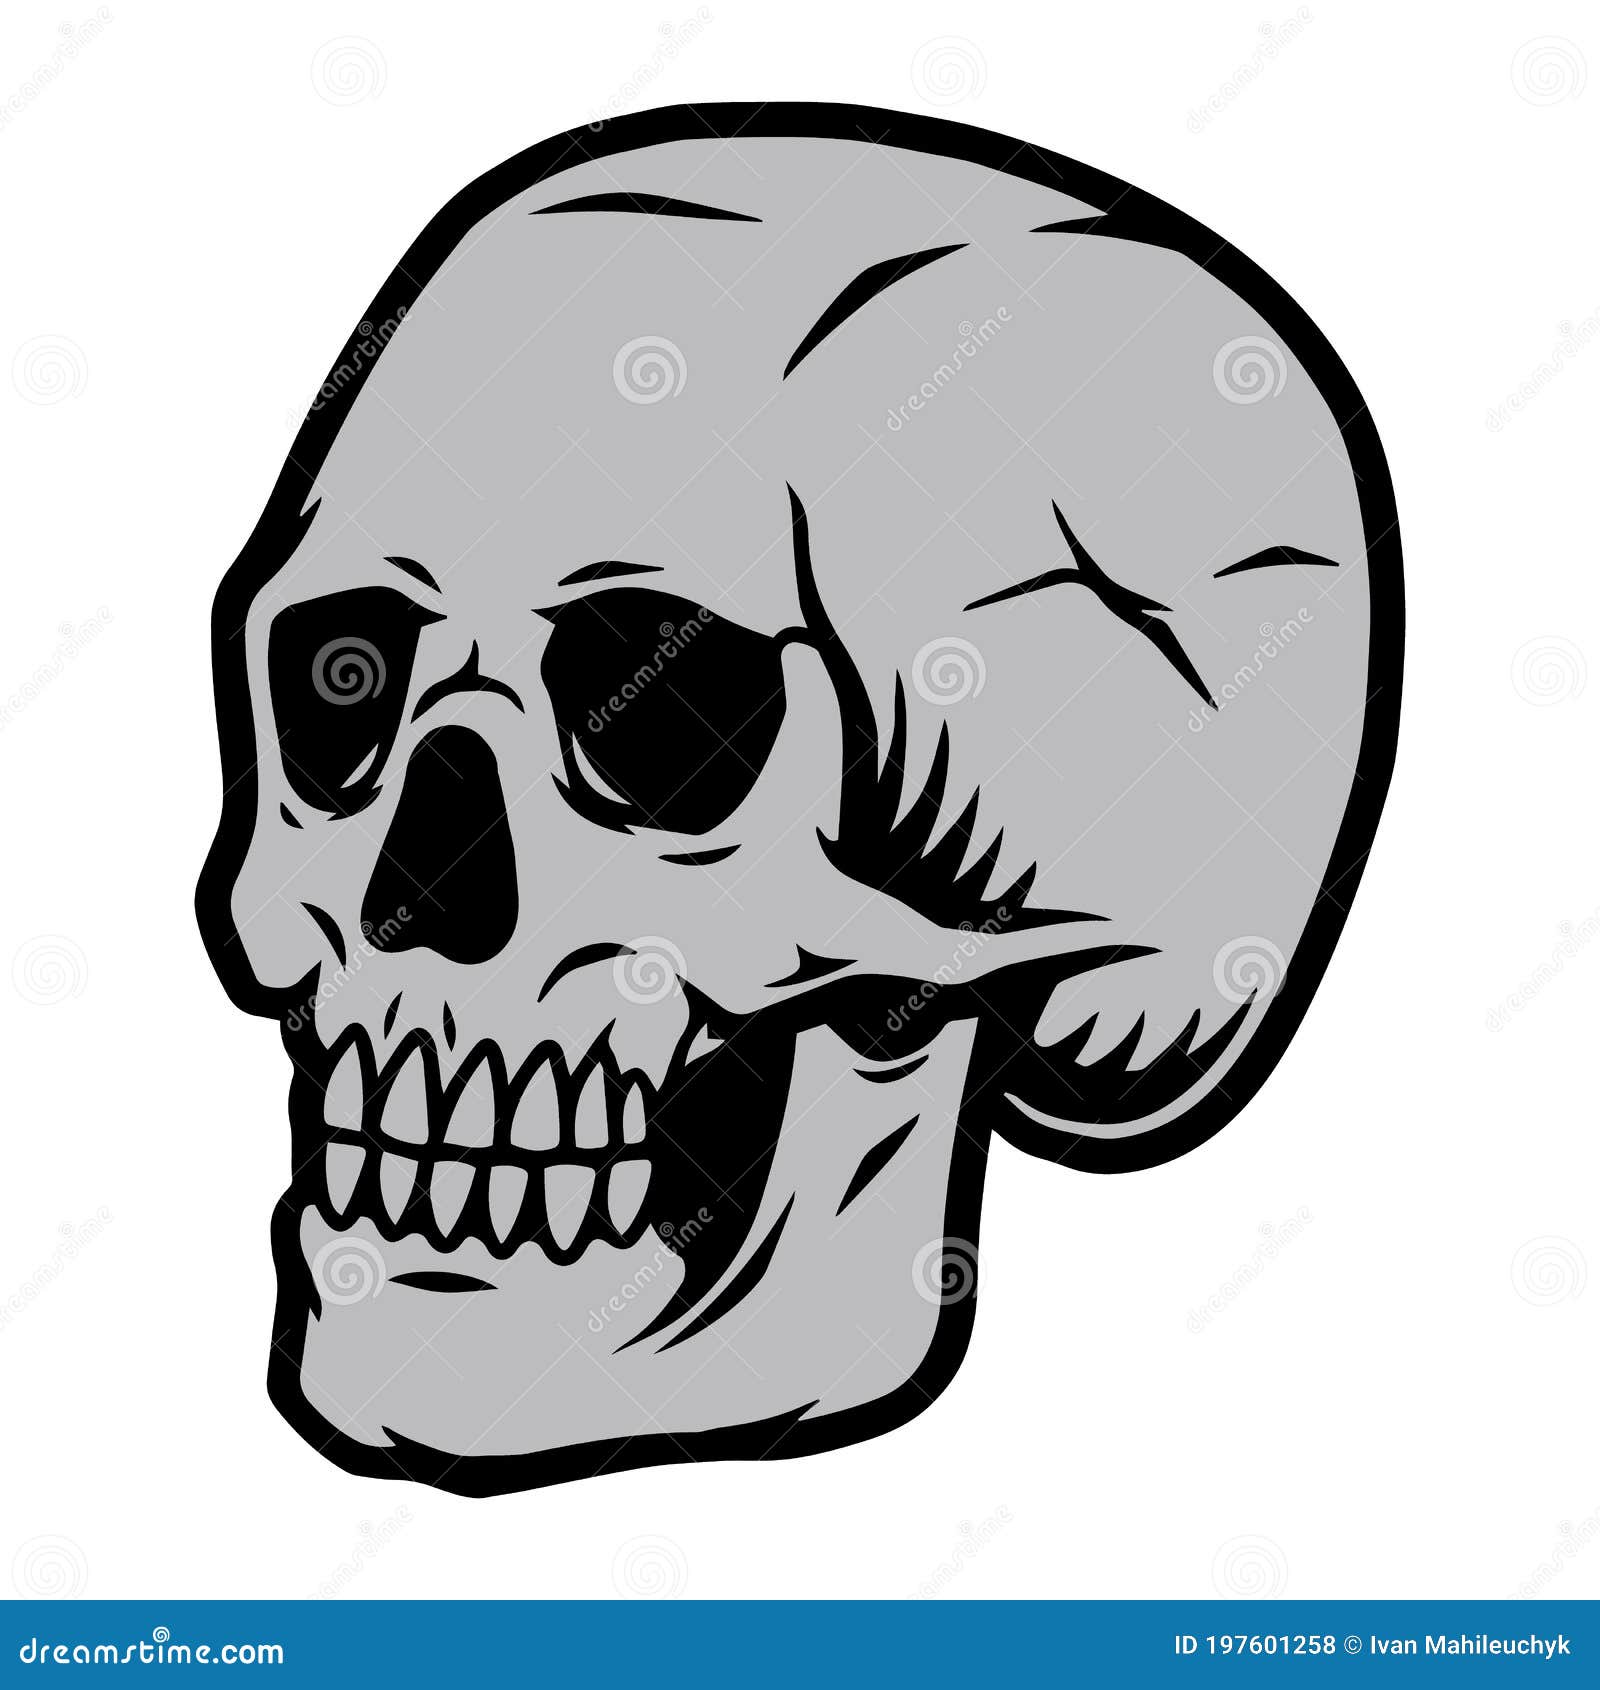 Skull Template Illustrations & Vectors In Blank Sugar Skull Template